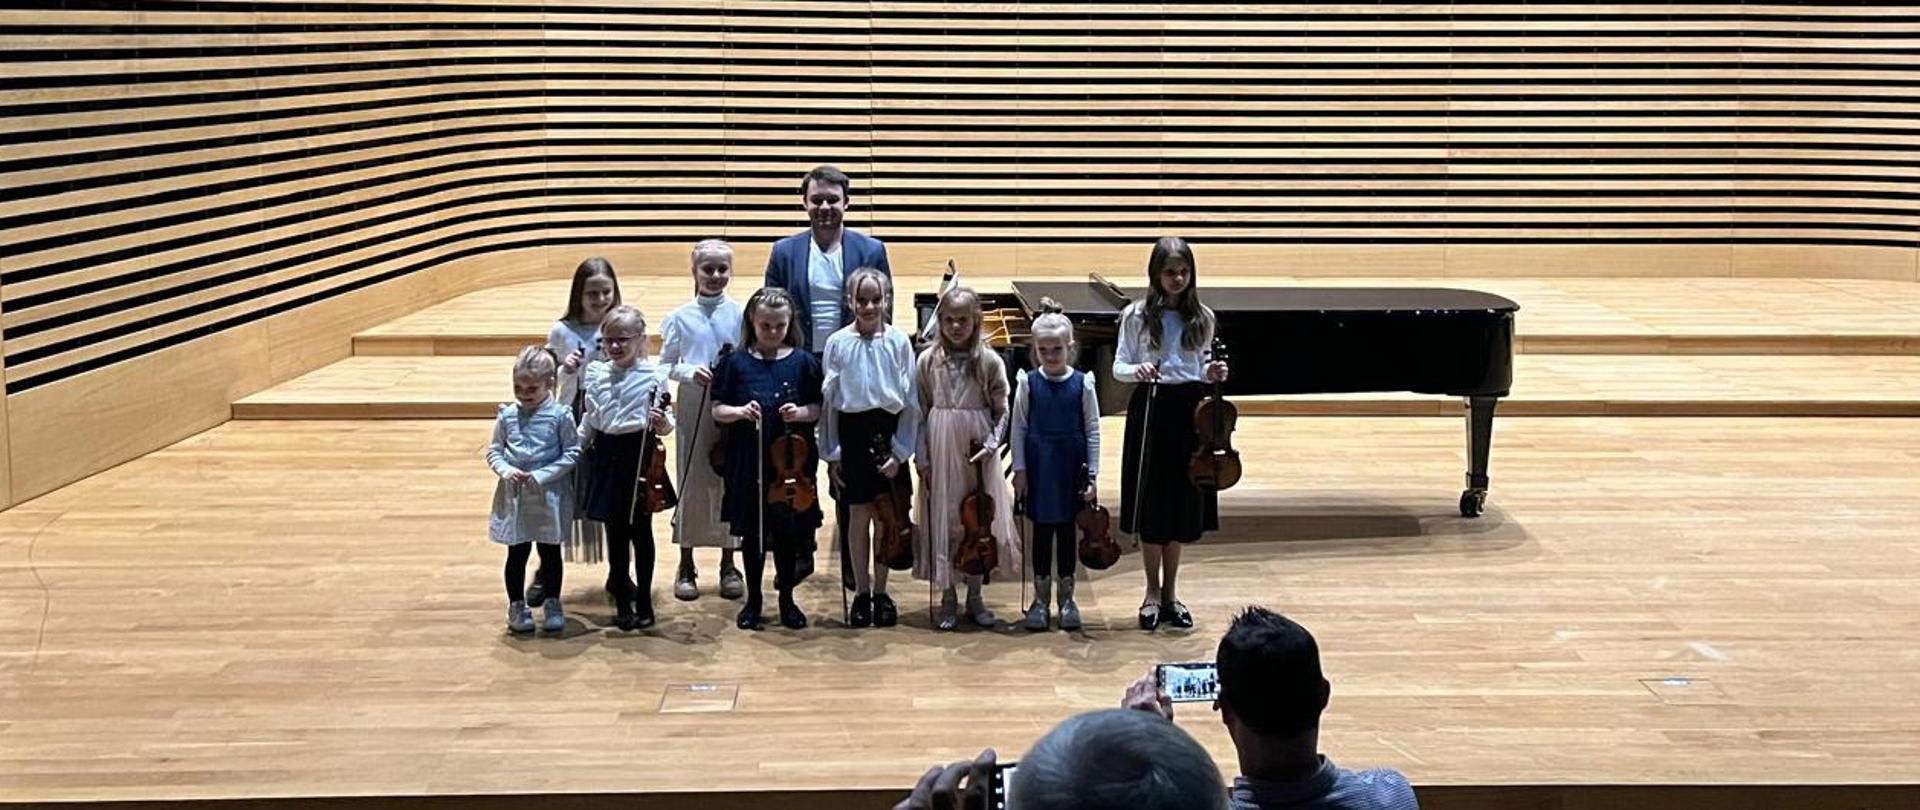 Dziewięć dziewczynek stoi w rzędzie i trzyma skrzypce, za nimi stoi mężczyzna.